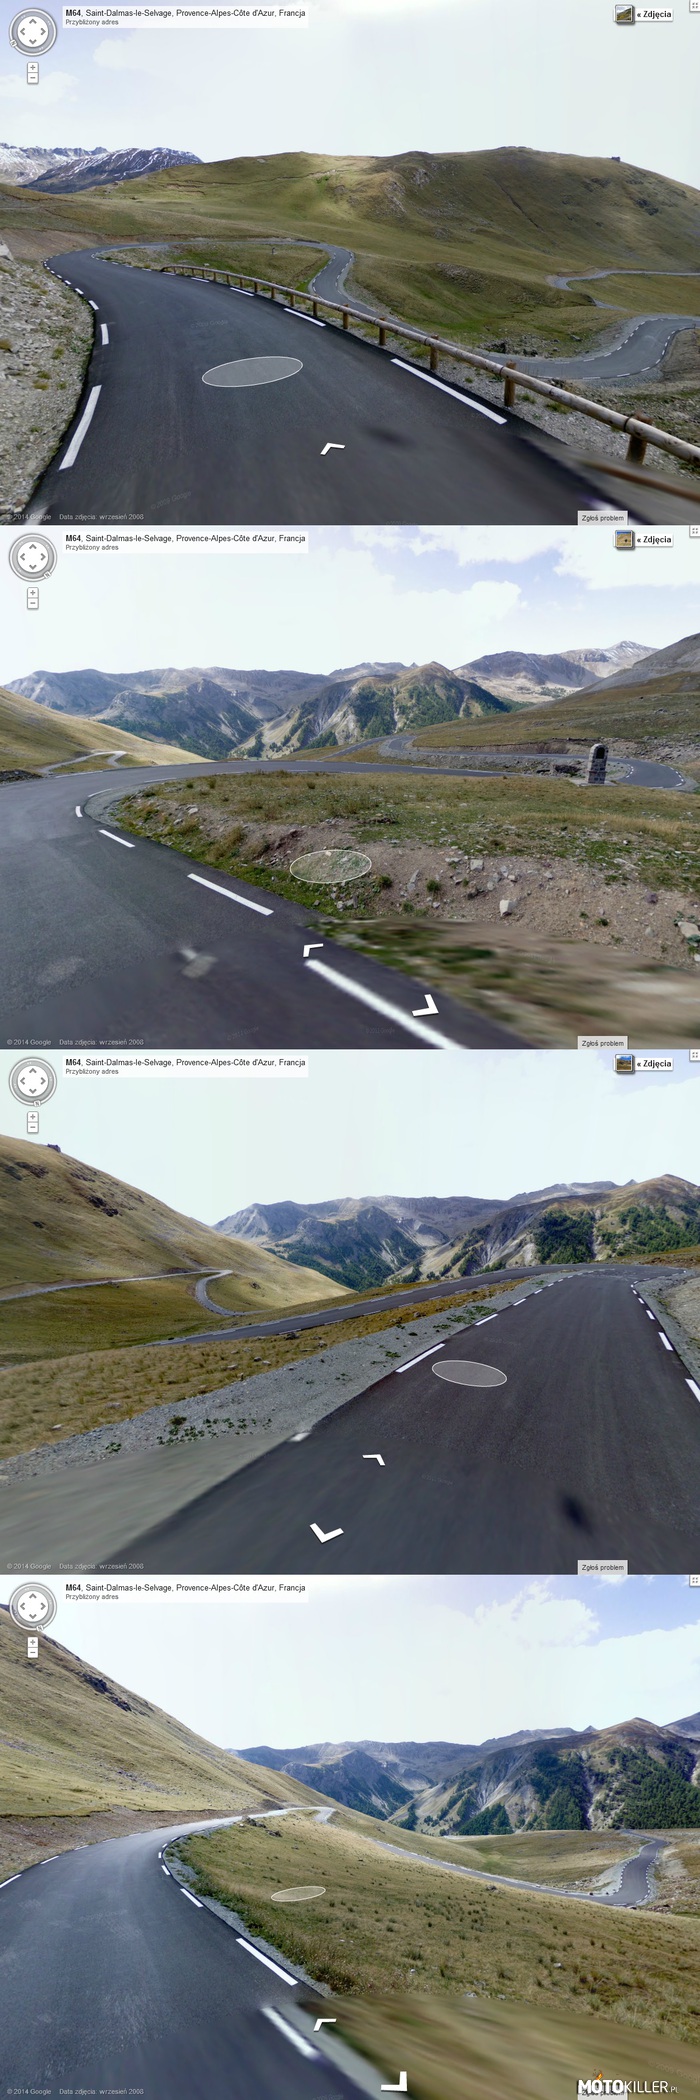 Podróż przez Alpy z Google Street View – odc.4 droga M64 Francja prowadzi z miejscowości Saint-Etienne-de-Tinee do Jausiers. Gdy przeglądam mapę wybieram najciekawsze odcinki dróg tam gdzie jest mało drzew (dużo dróg biegnie przez las gdzie widać tylko 1 zakręt) żeby móc ukazać jak największą ilość zakrętów na jednym ujęciu. 